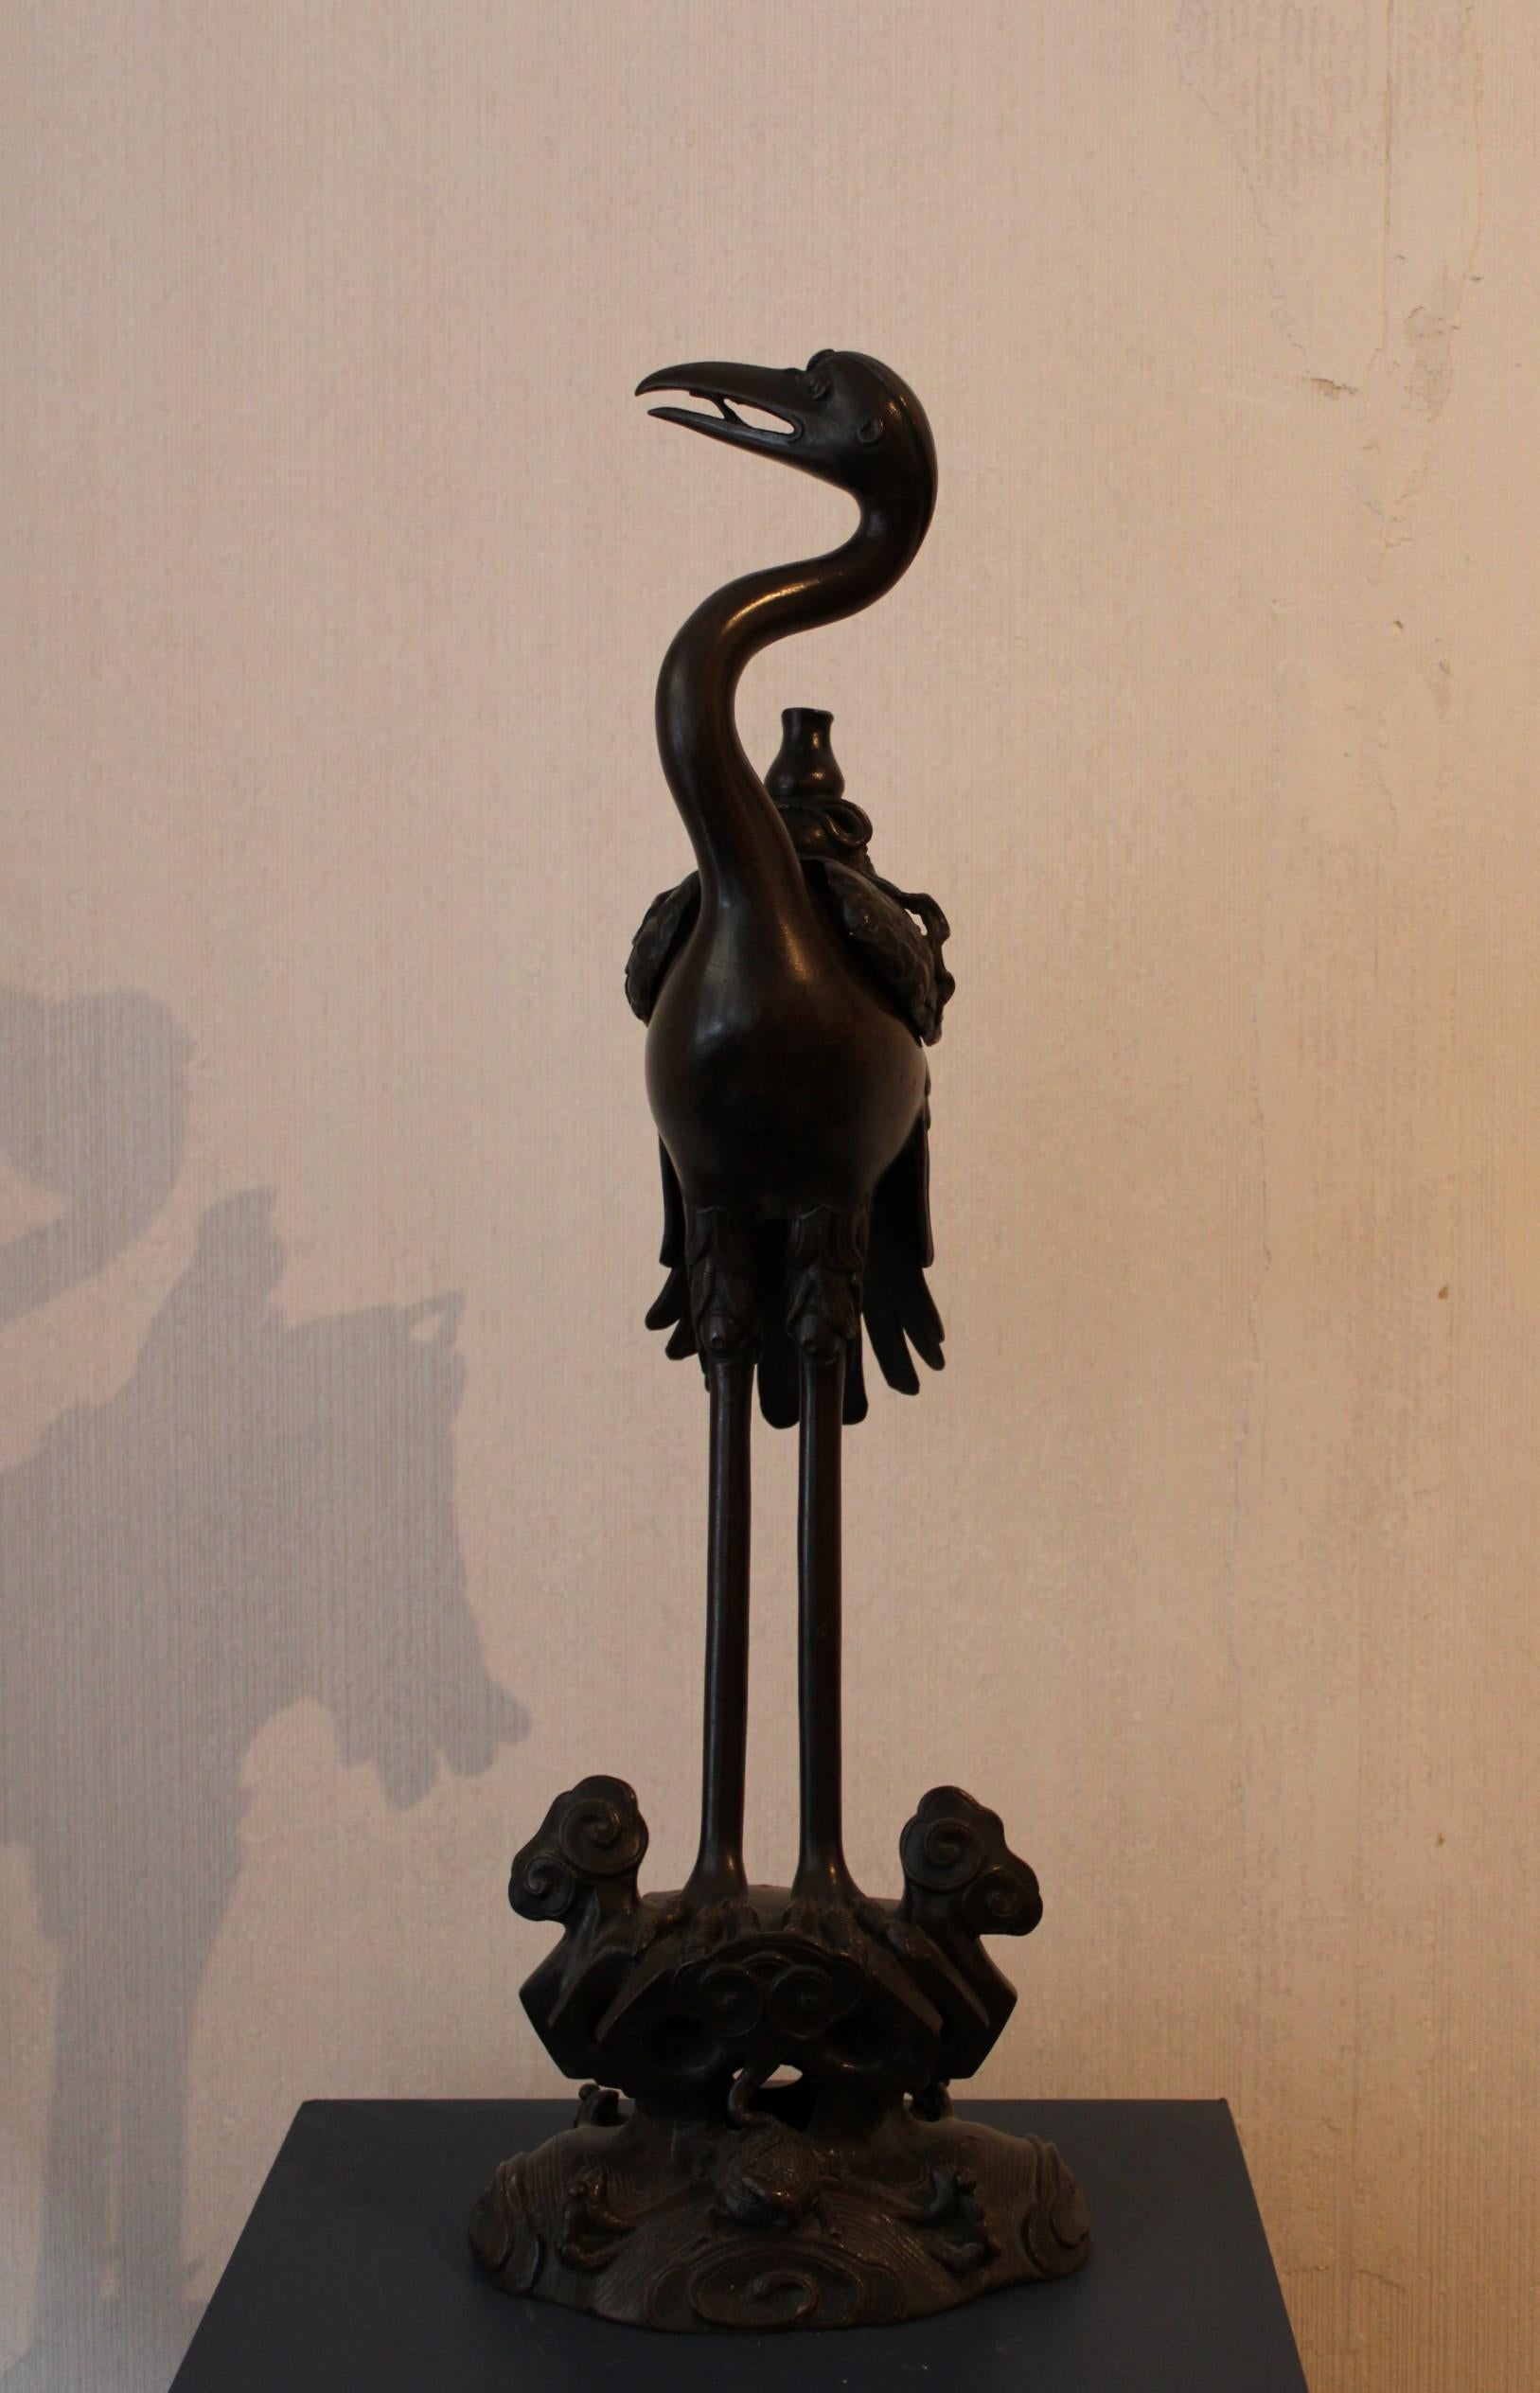 Bronze bird incense burner.
China, 19th century.